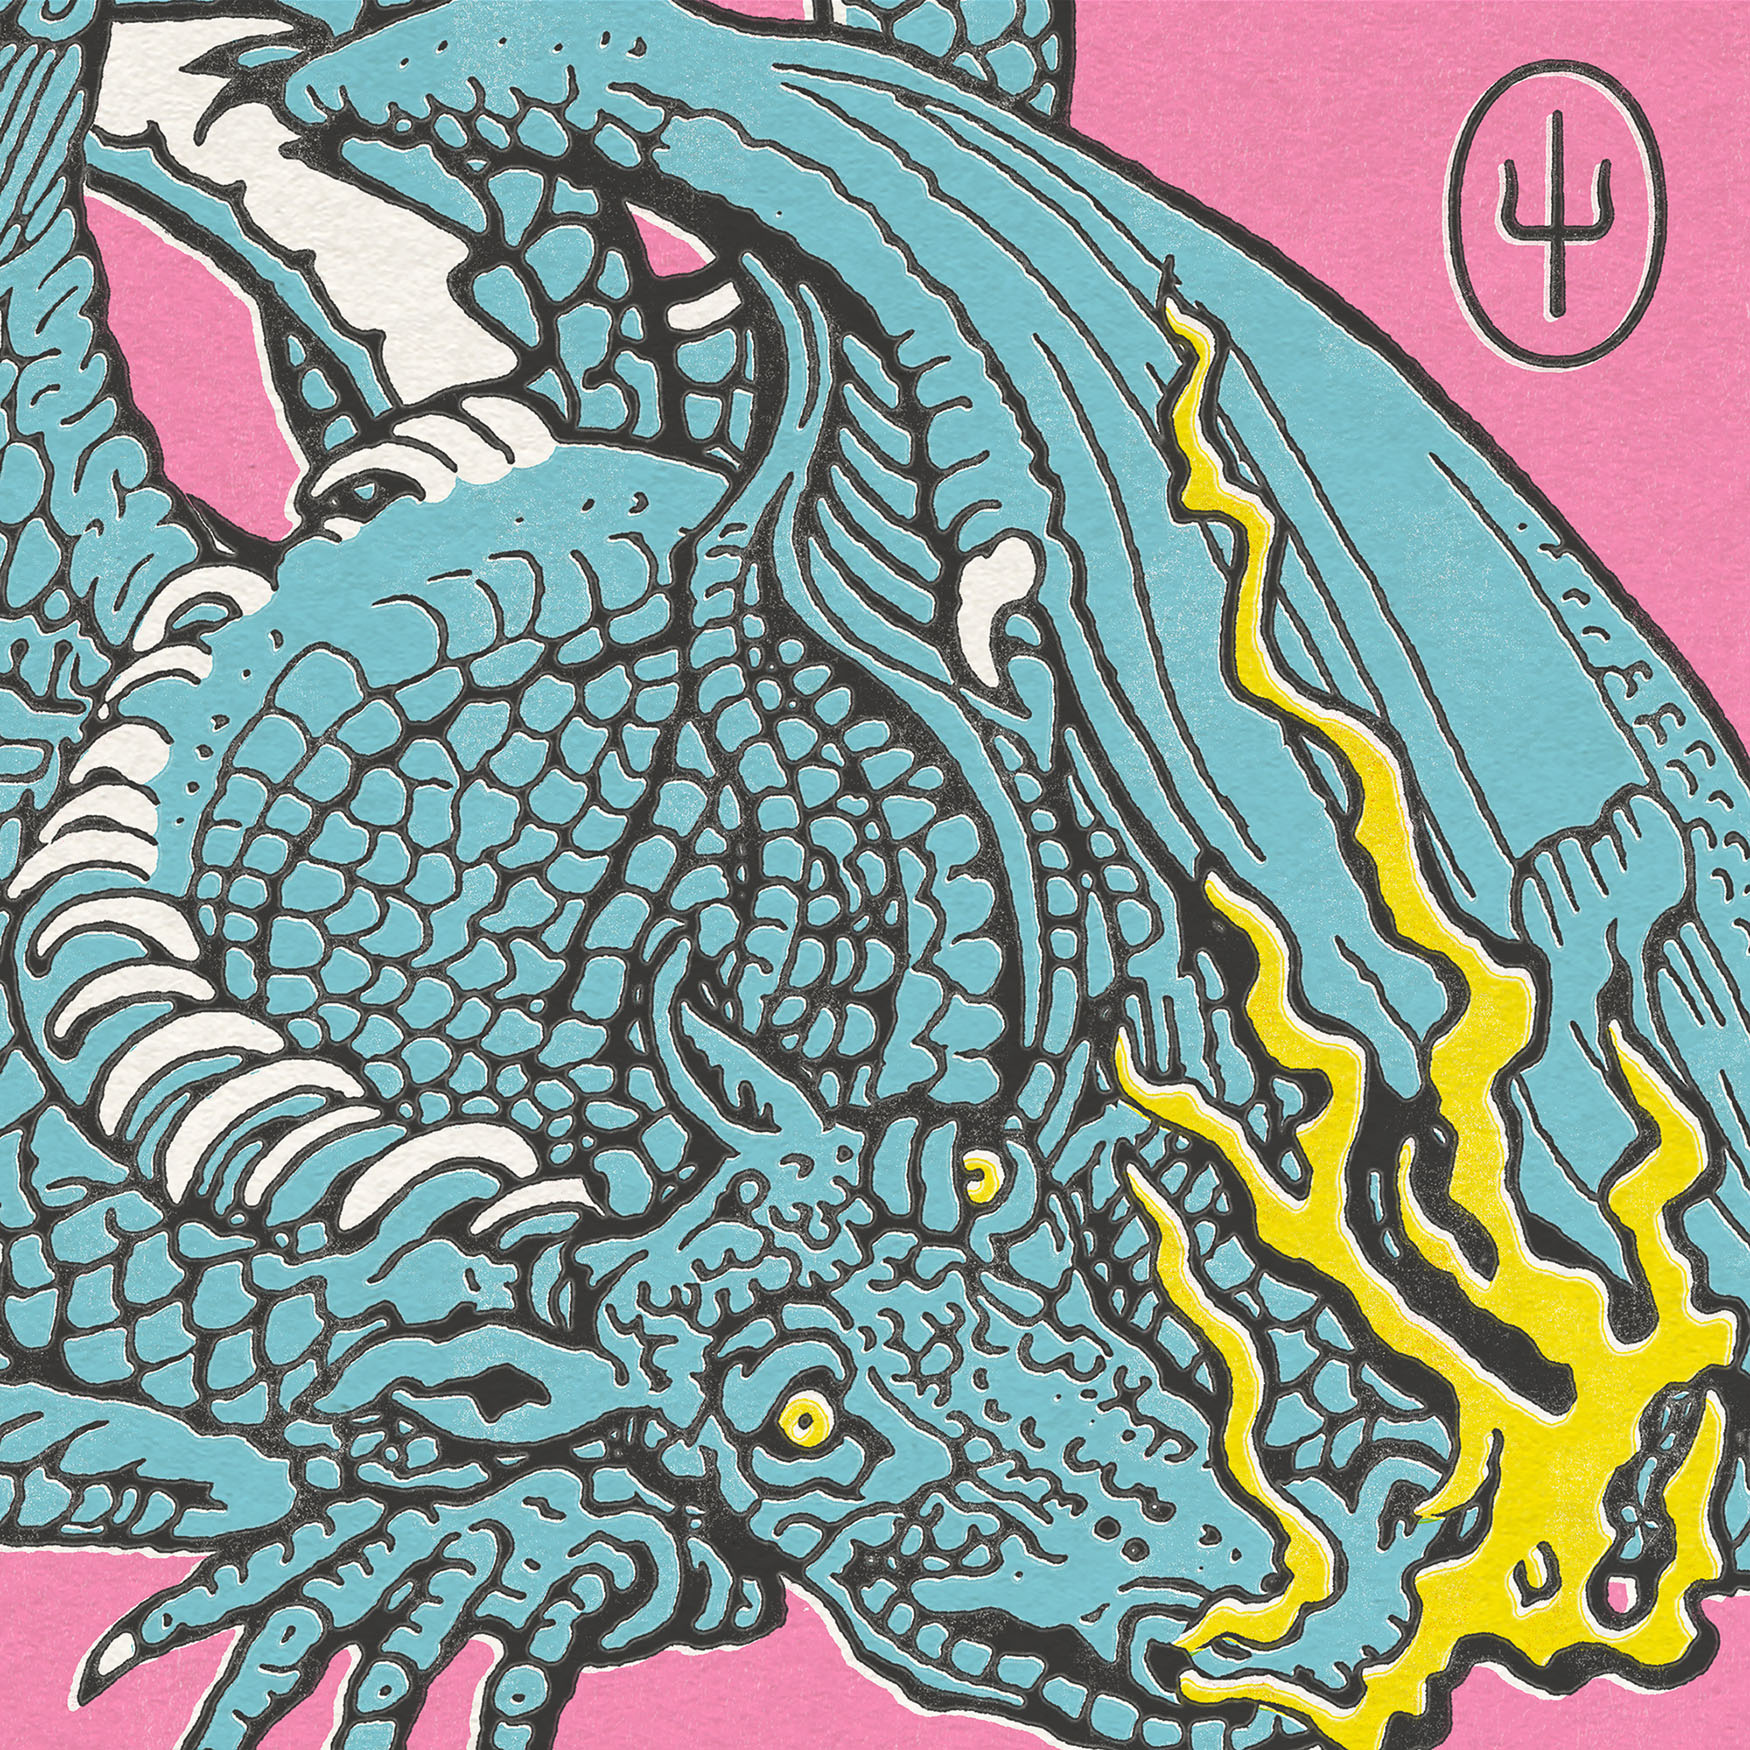 A imagem é a capa dos singles Shy Away e Choker, da banda Twenty One Pilots. A capa tem um fundo rosa claro, com o desenho de um dragão azul, soltando fogo pelas narinas.